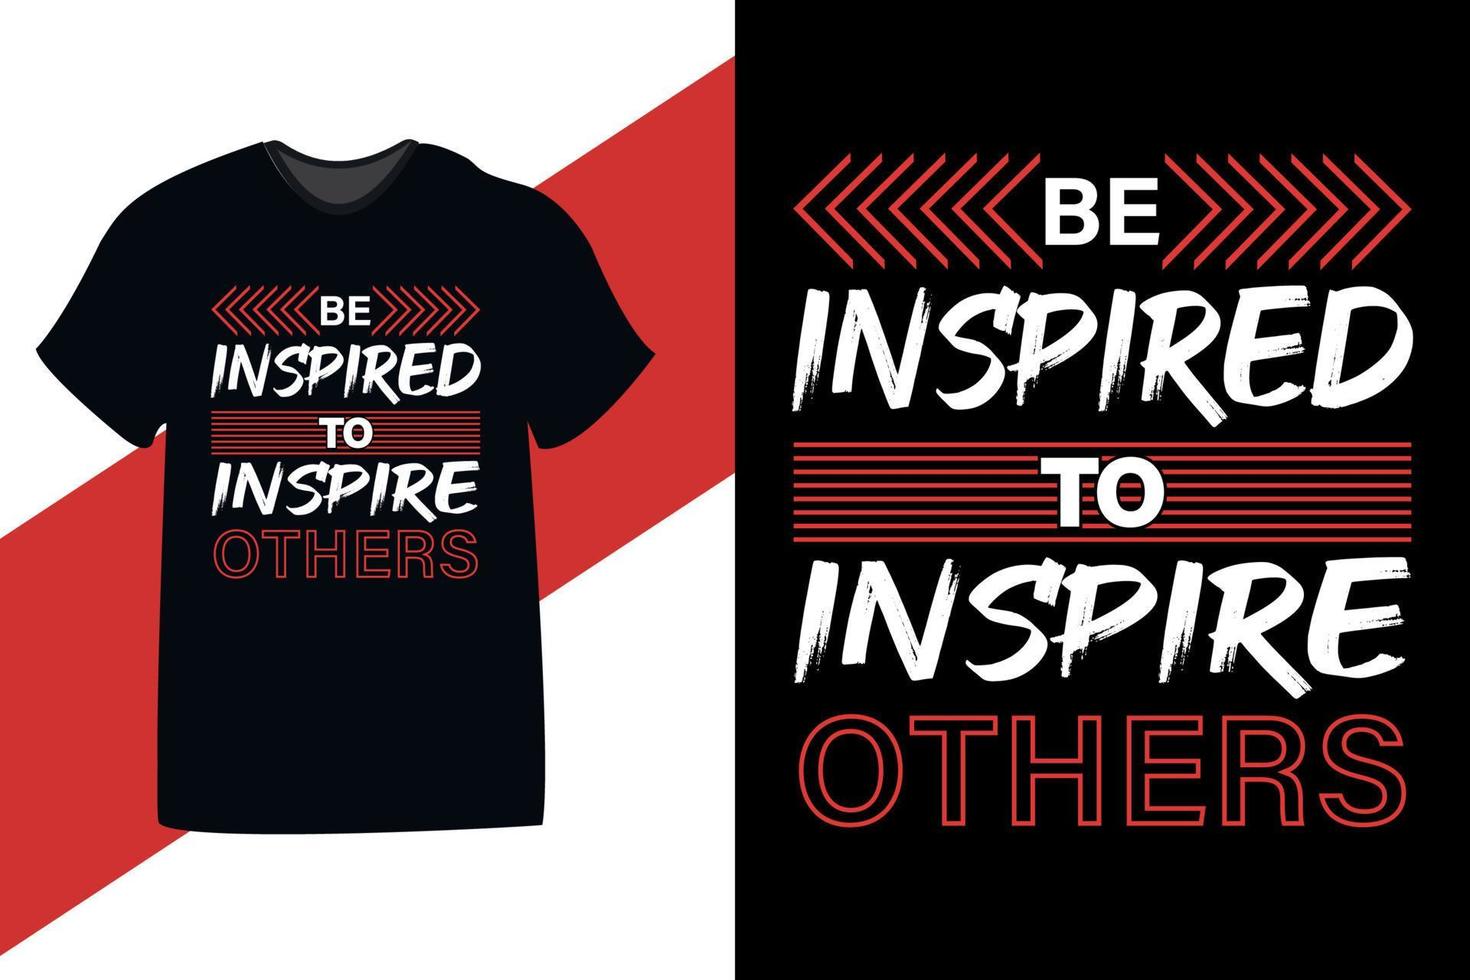 laat je inspireren om anderen te inspireren motiverende quote tshirt design vector